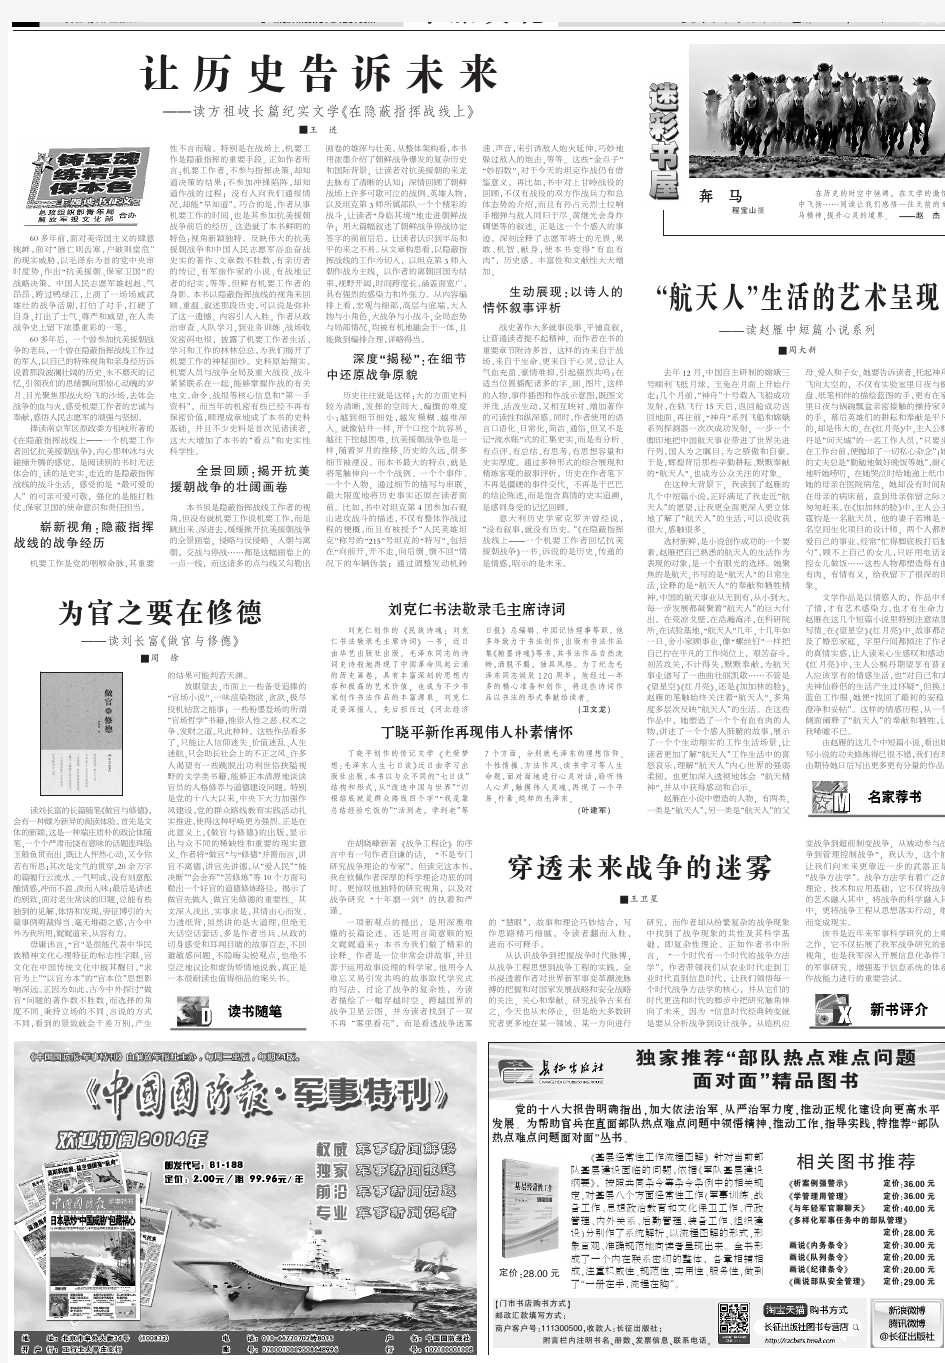 让历史告诉未来 - 中国军网 - 中国人民解放军官方军事新闻门户